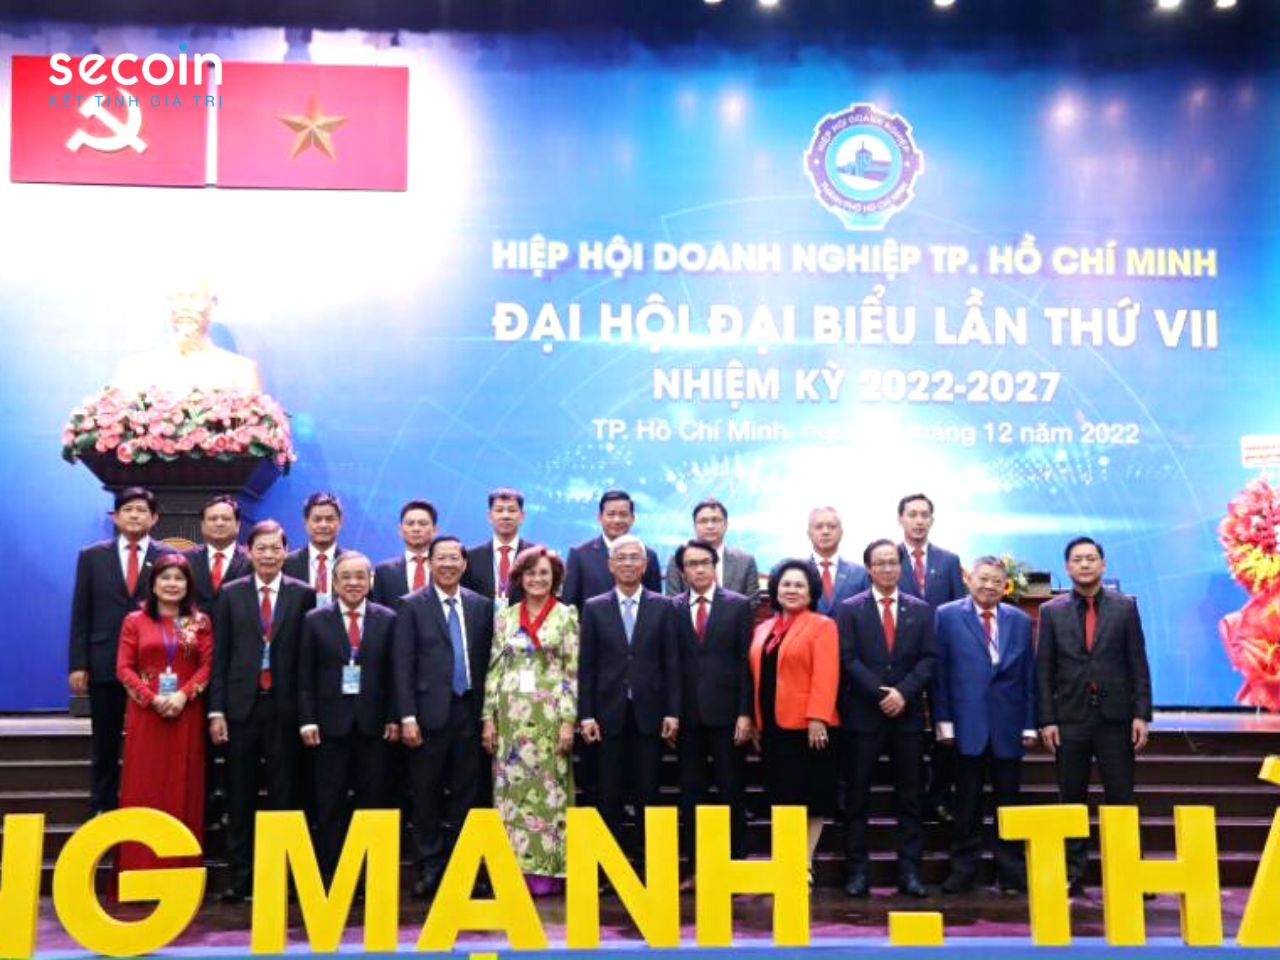 Chúc mừng Ông Đinh Hồng Kỳ - Nhận cương vị Phó Chủ tịch Hiệp hội Doanh nghiệp TP.HCM (HUBA) nhiệm kỳ VII